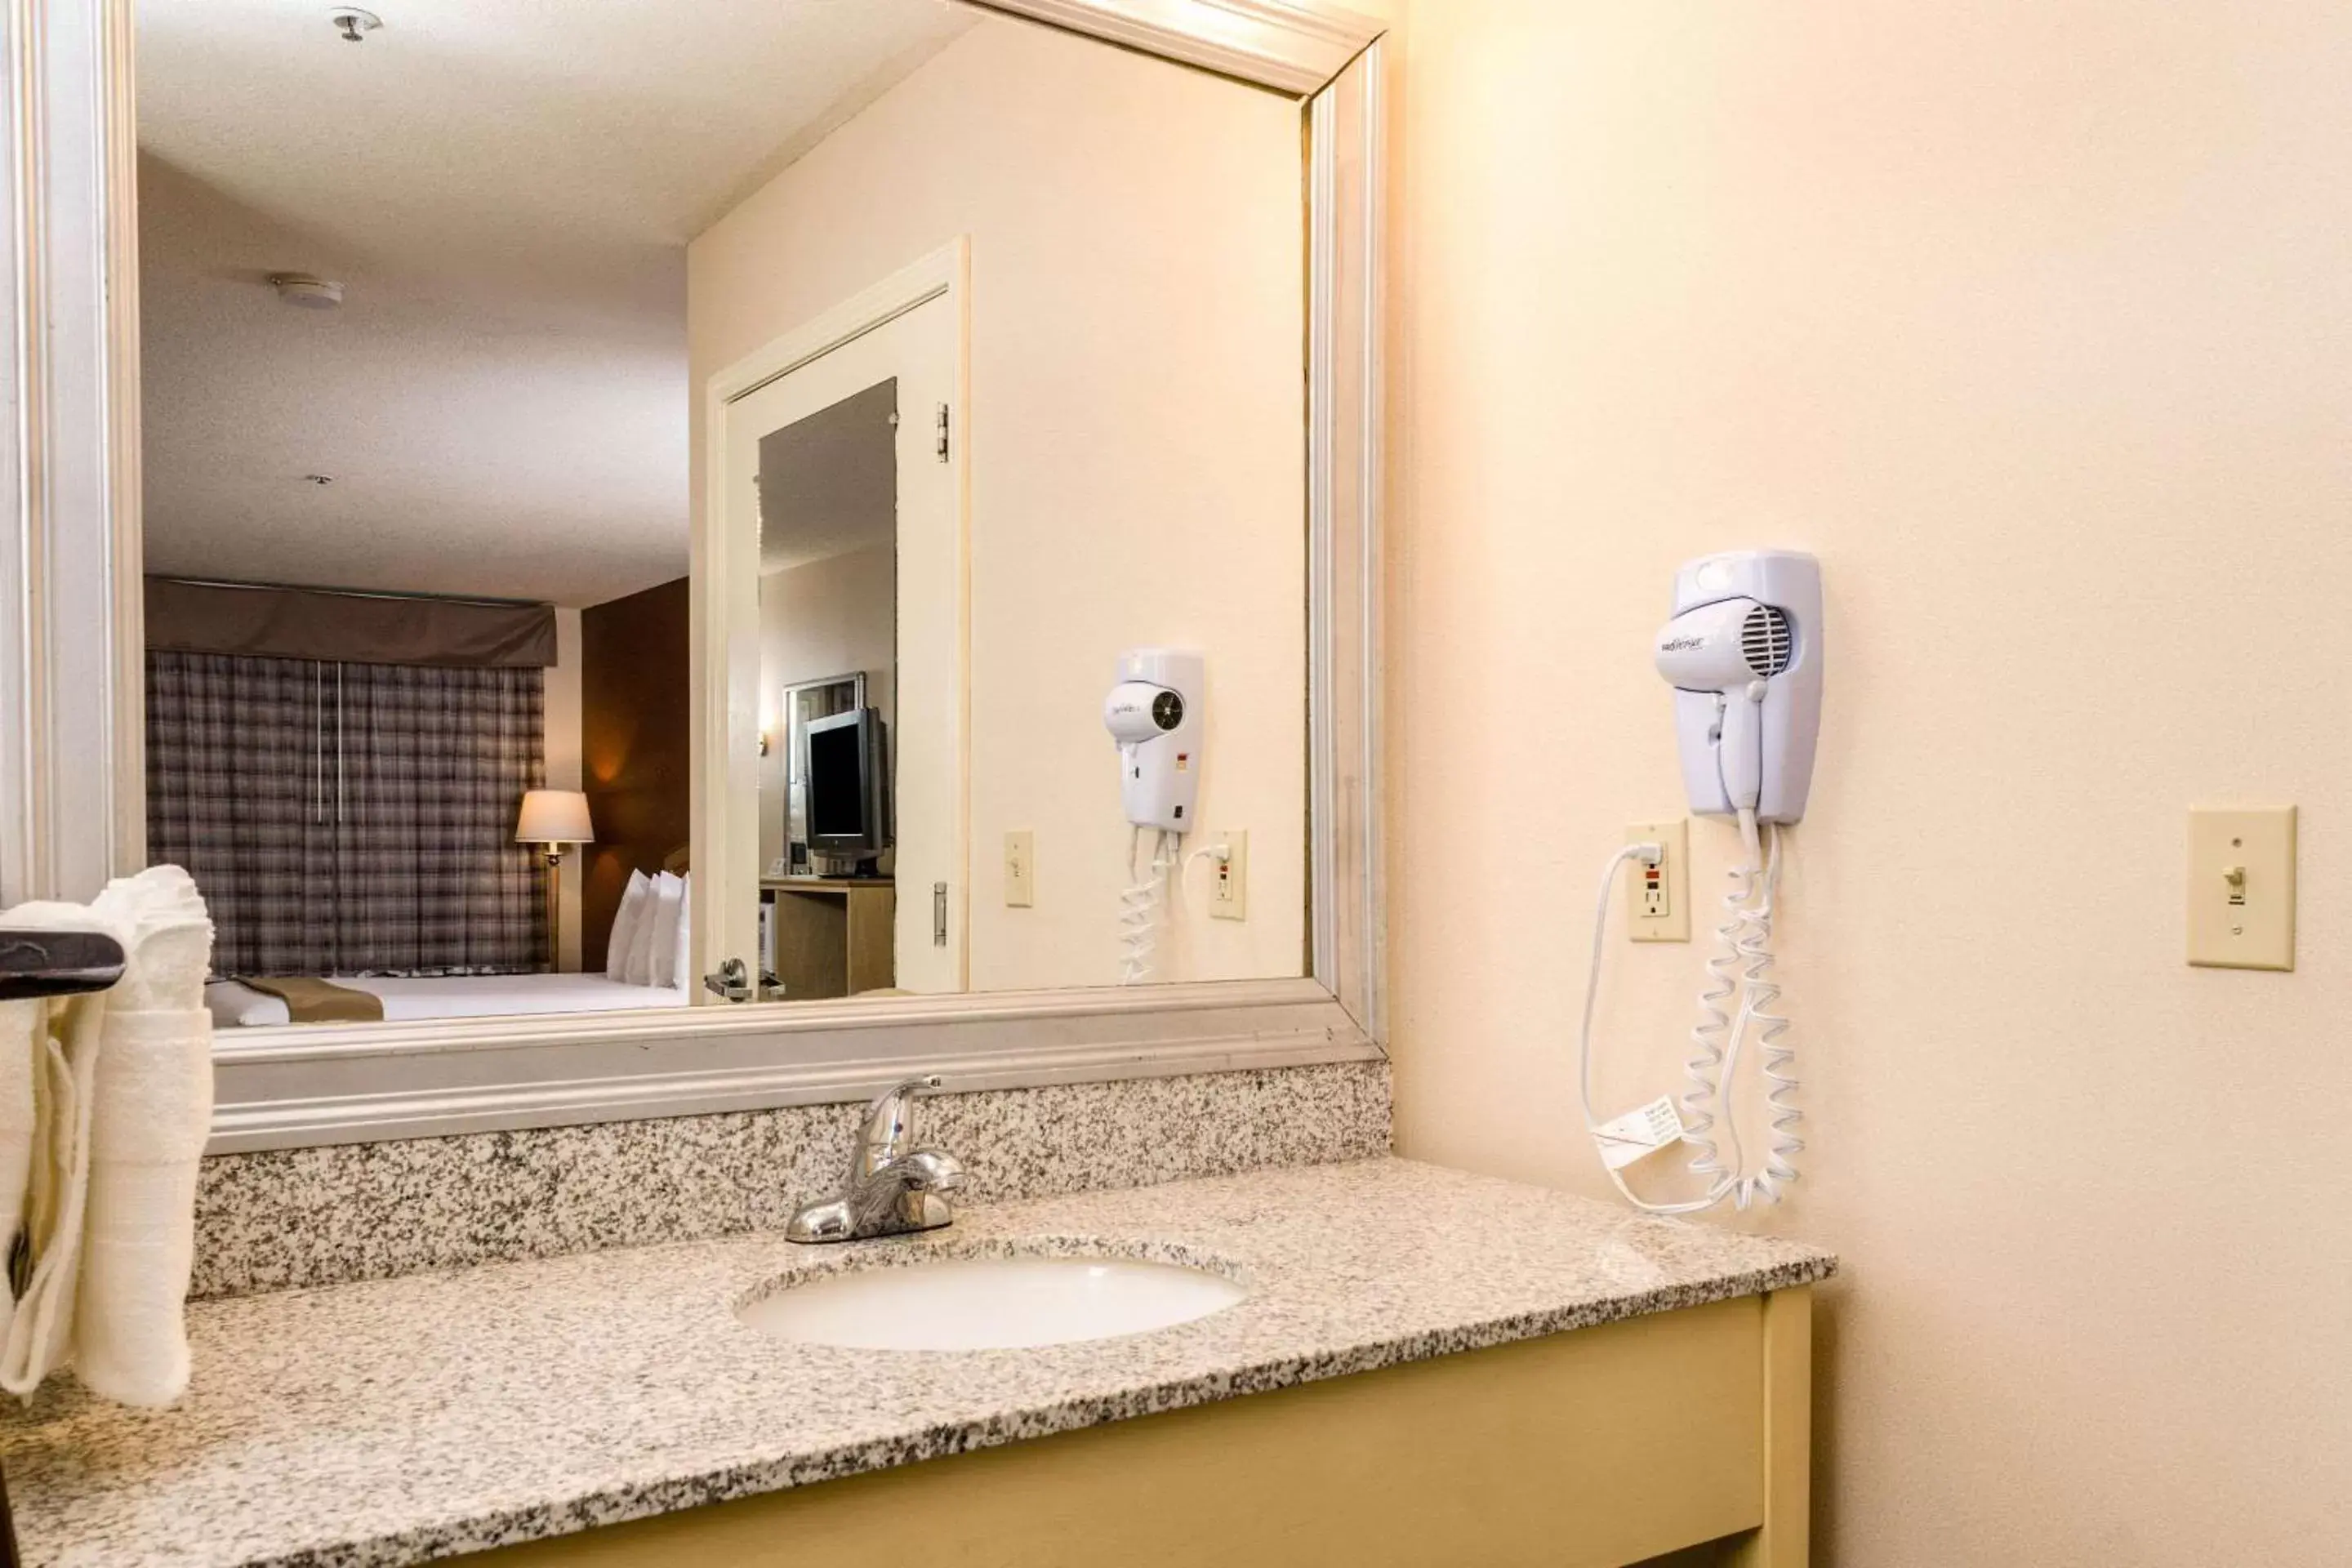 Bedroom, Bathroom in Quality Inn & Suites Lathrop